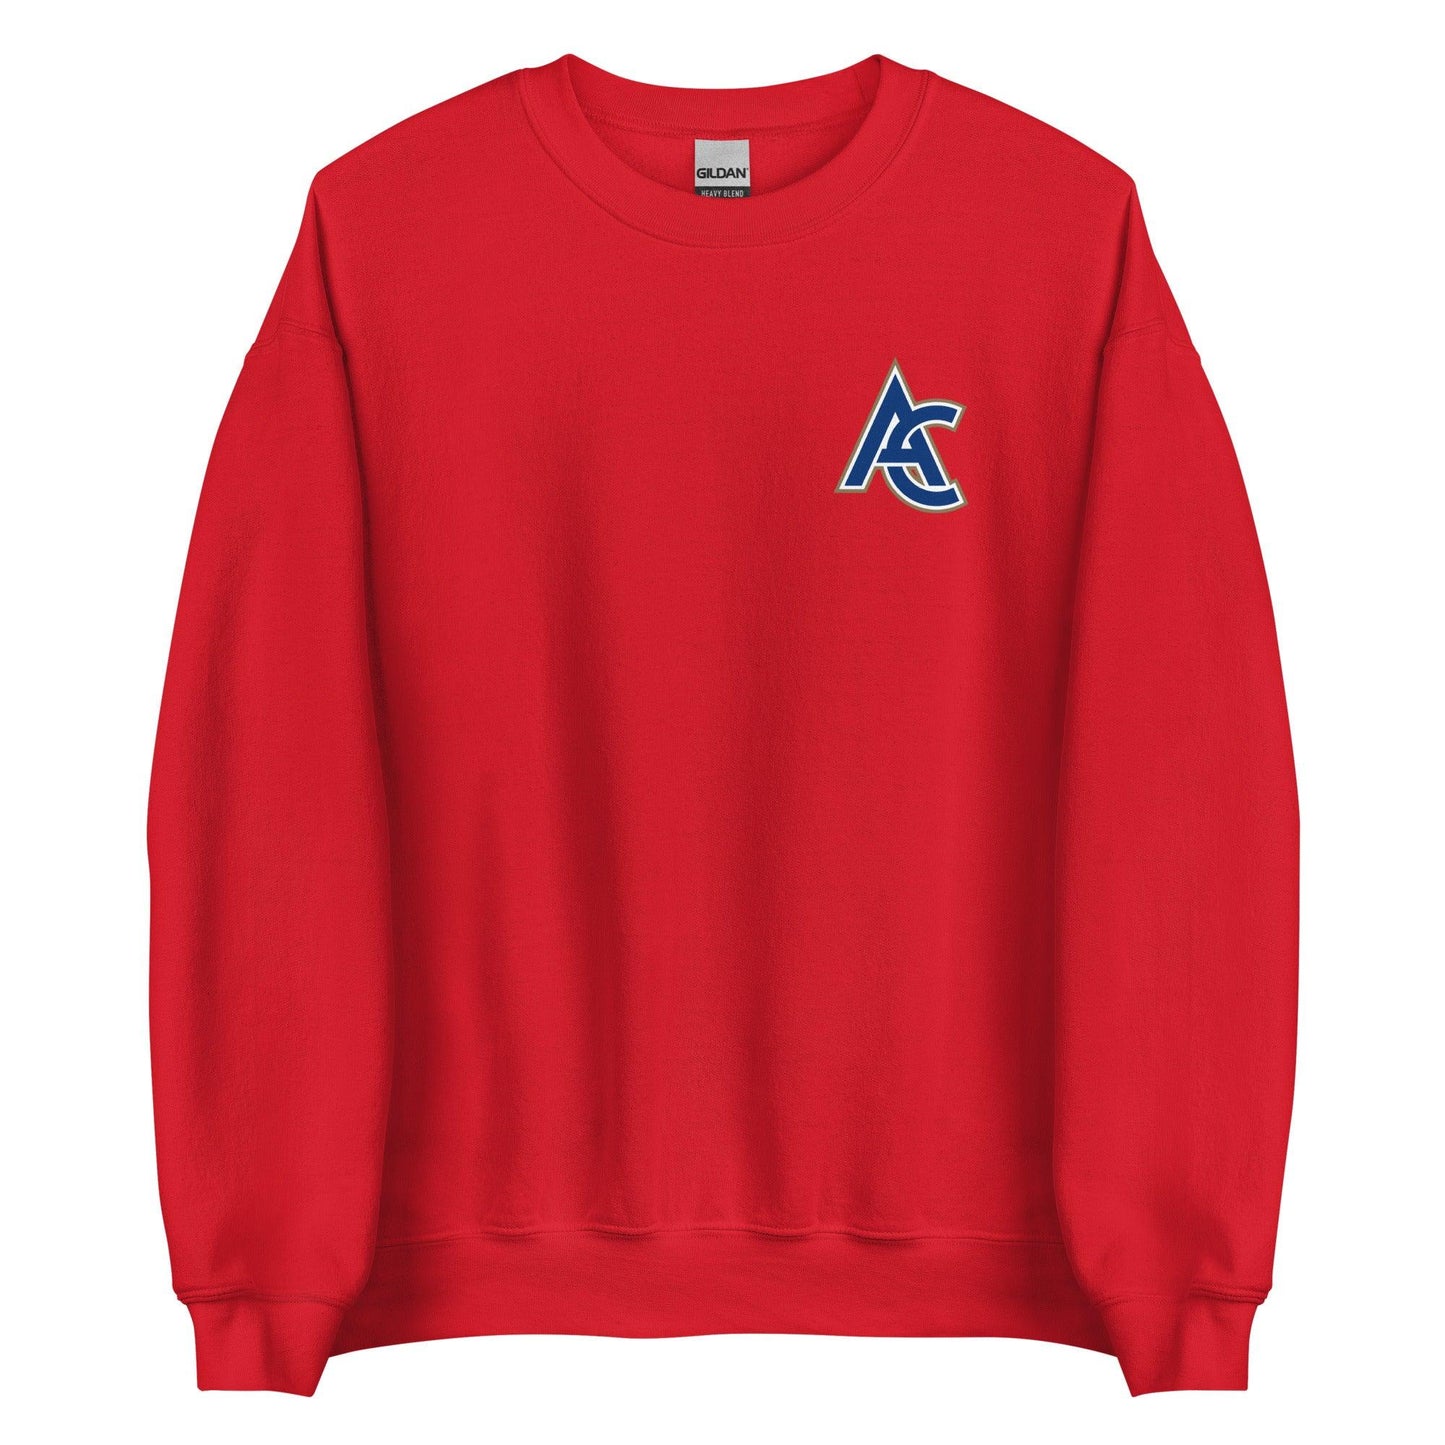 Austin Cox "Elite" Sweatshirt - Fan Arch